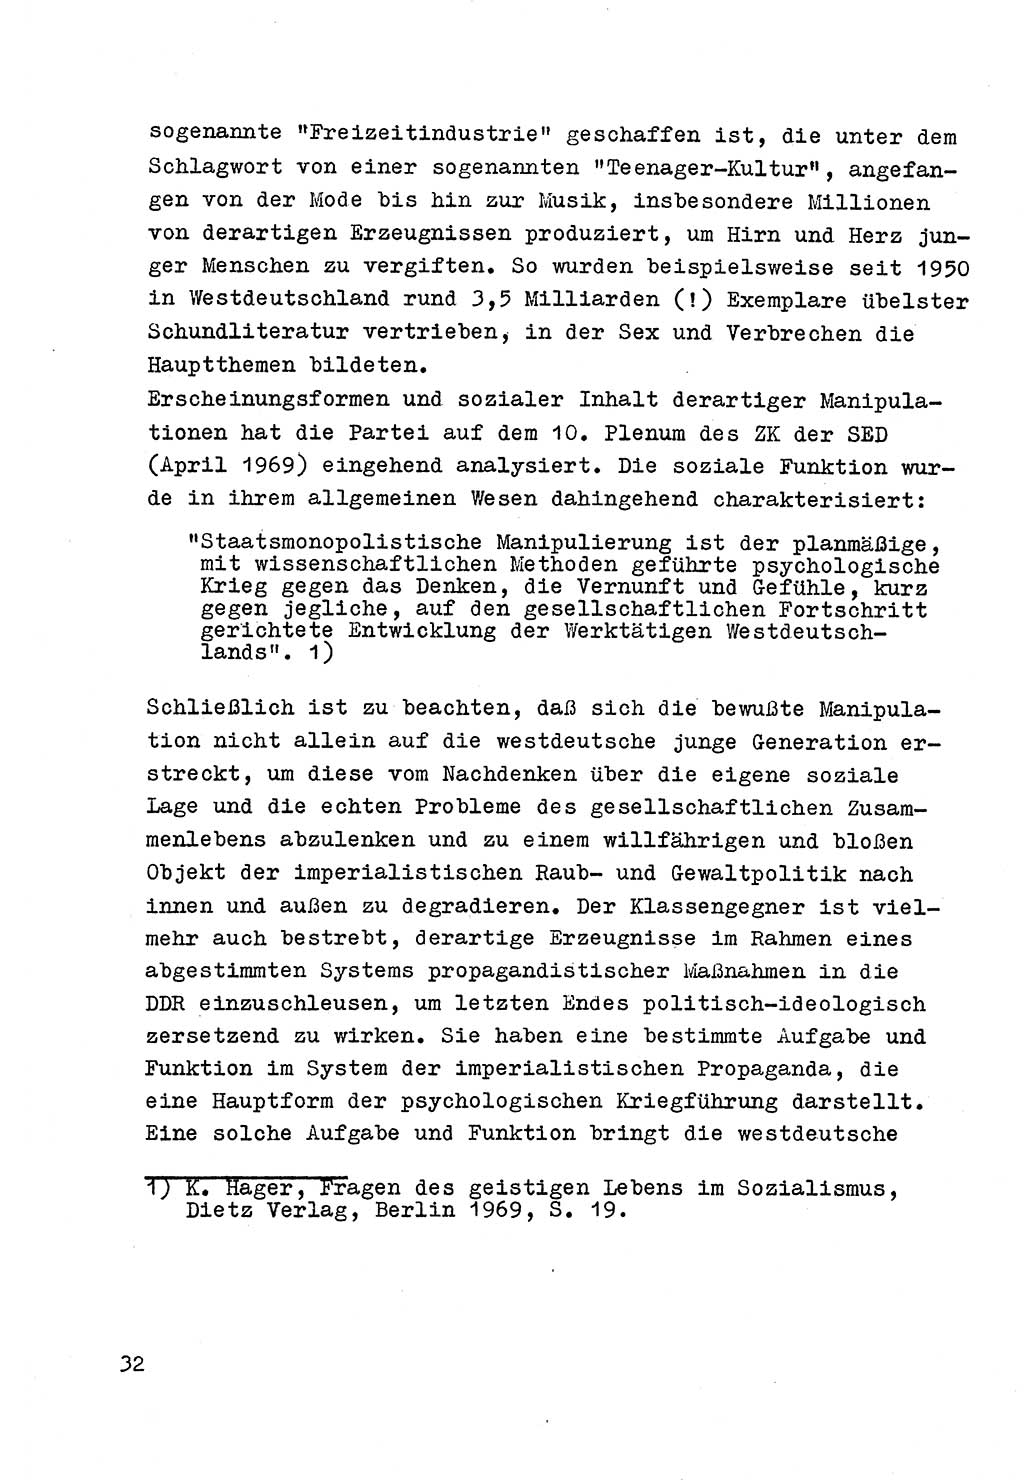 Strafrecht der DDR (Deutsche Demokratische Republik), Besonderer Teil, Lehrmaterial, Heft 4 1969, Seite 32 (Strafr. DDR BT Lehrmat. H. 4 1969, S. 32)